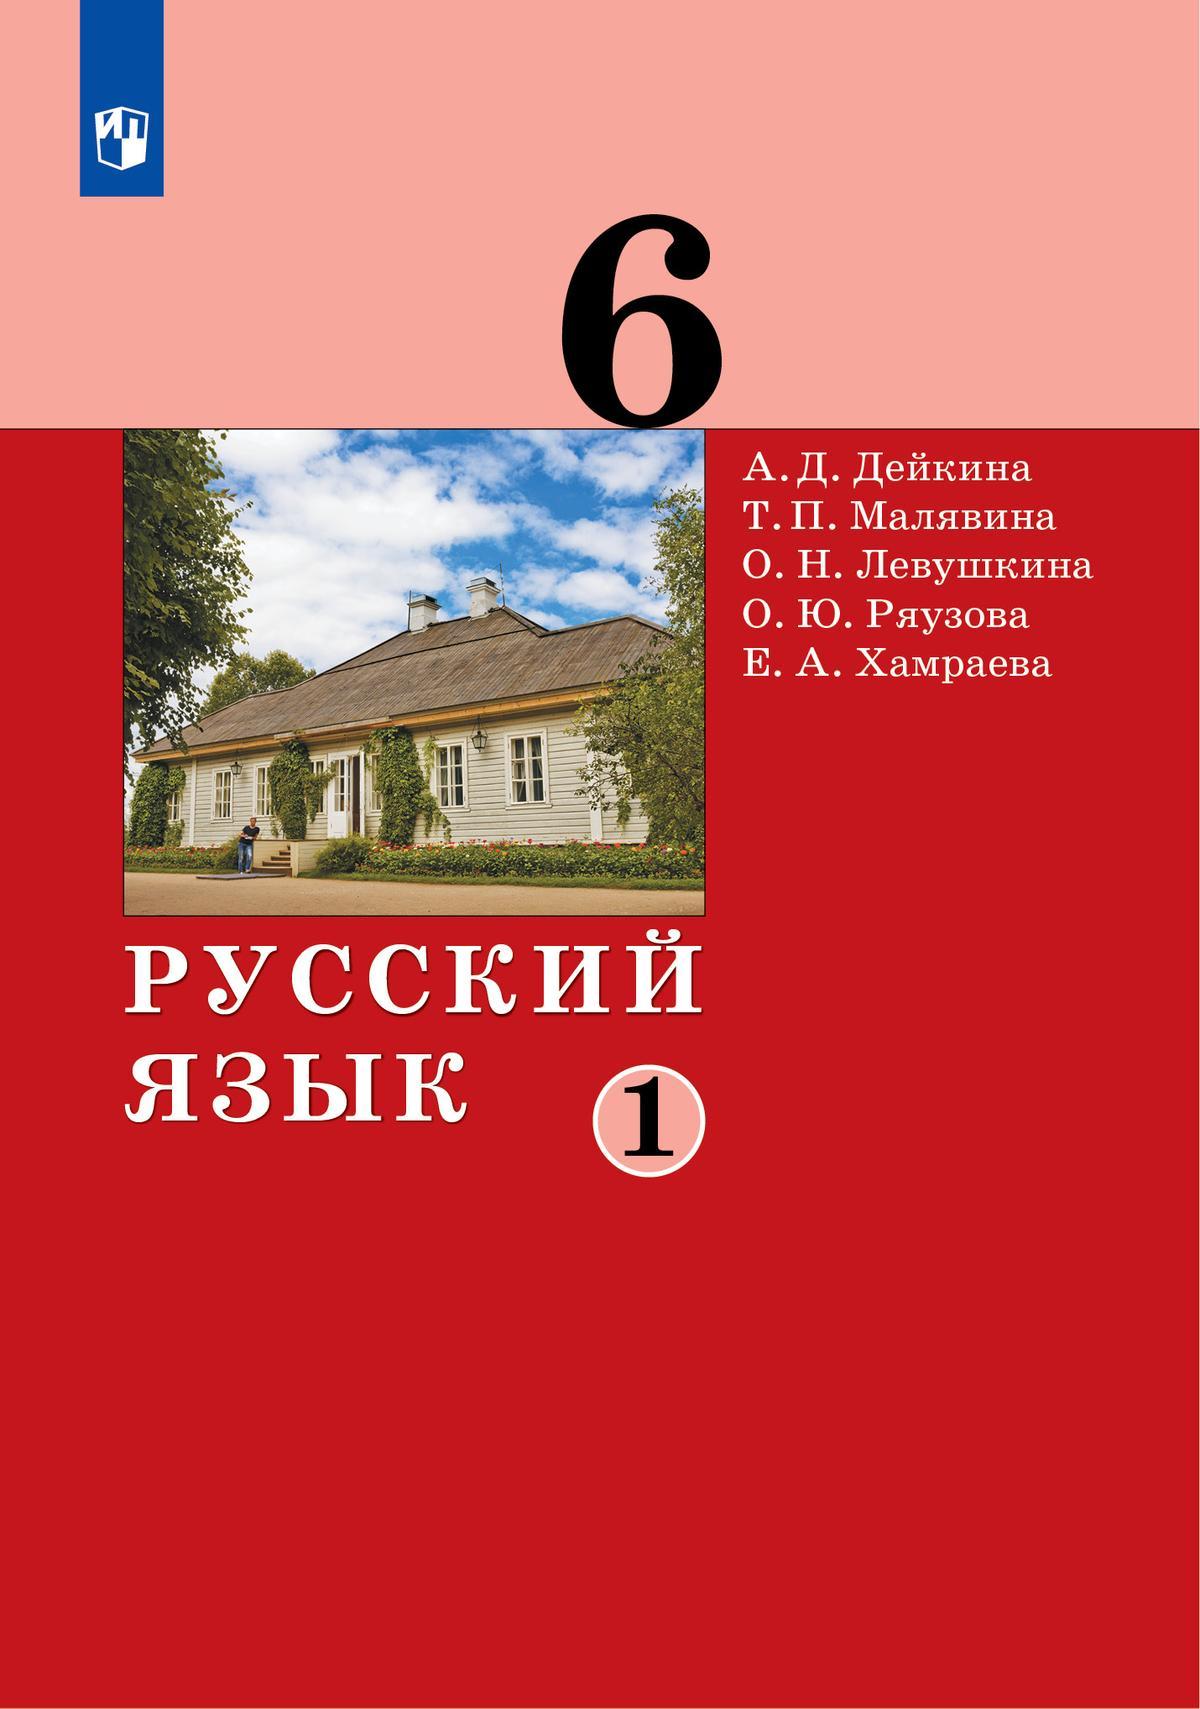 Русский язык. 6 класс. Электронная форма учебника. 2 ч. Часть 1 1